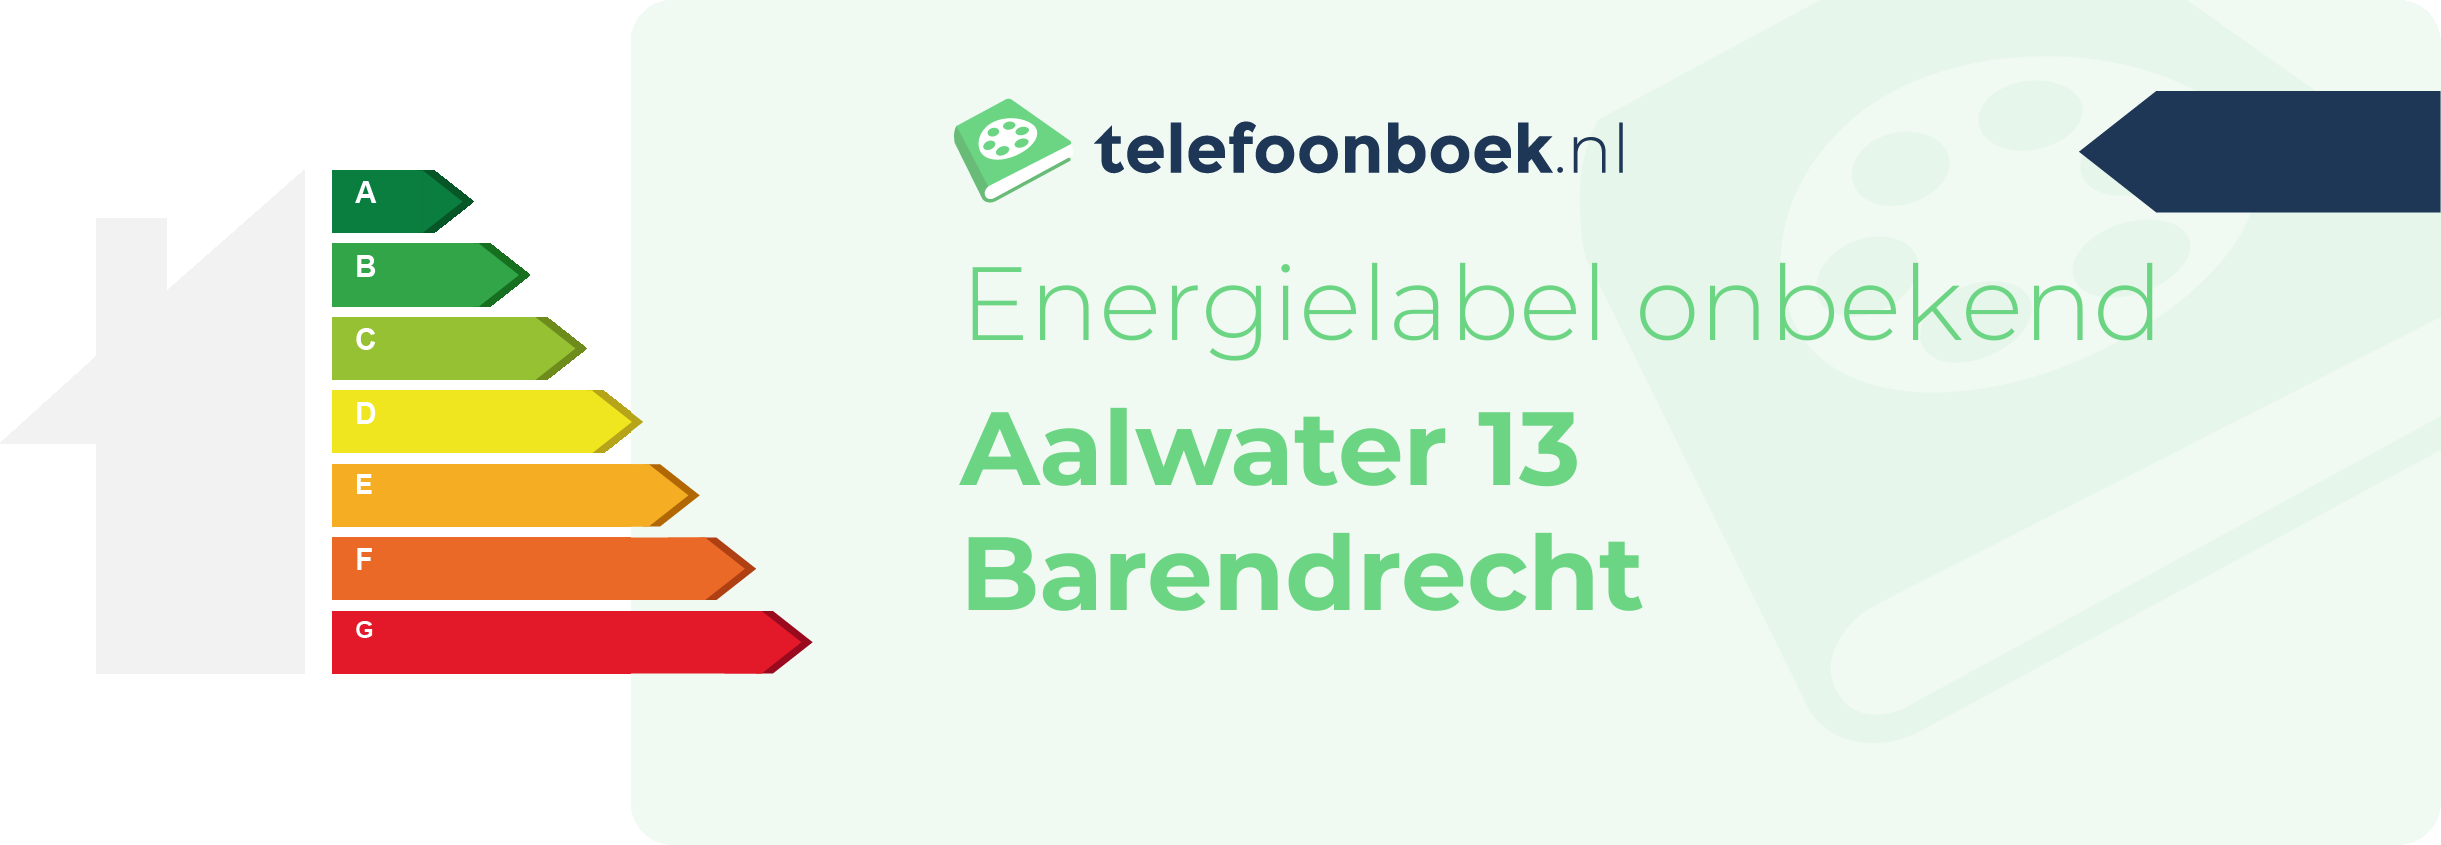 Energielabel Aalwater 13 Barendrecht